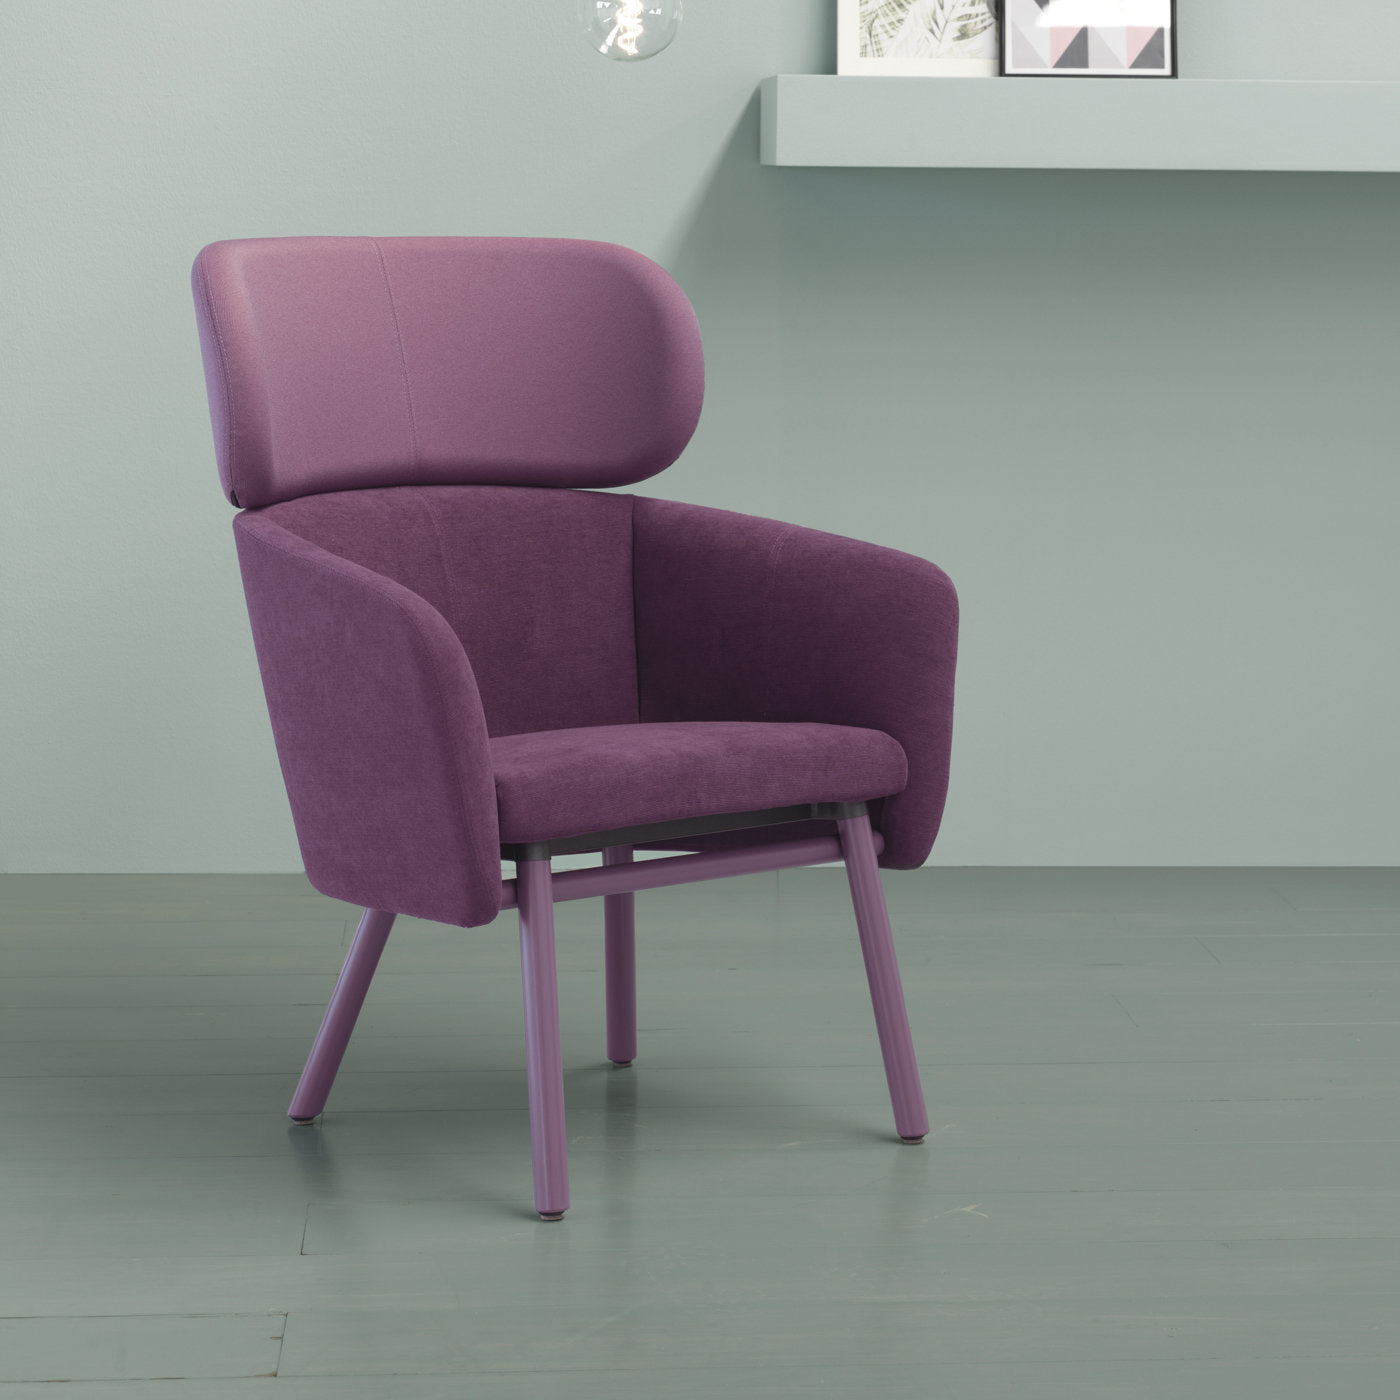 Balù XL Lilac Chair By Emilio Nanni - Alternative view 1